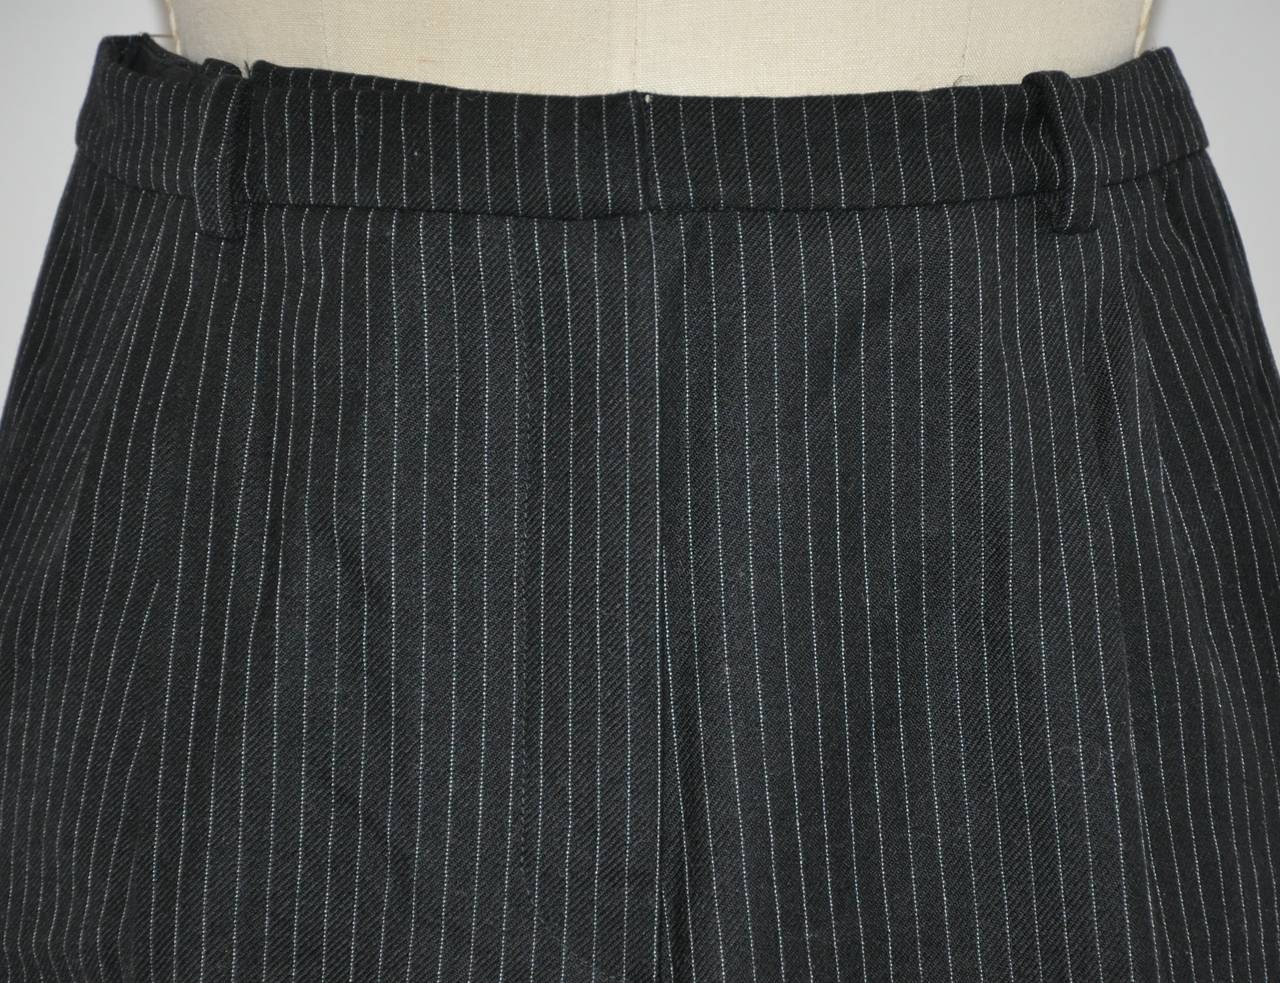 Le pantalon à pinces en laine noire de Balenciaga mesure 30 cm à la taille. La largeur de la ceinture est de 1